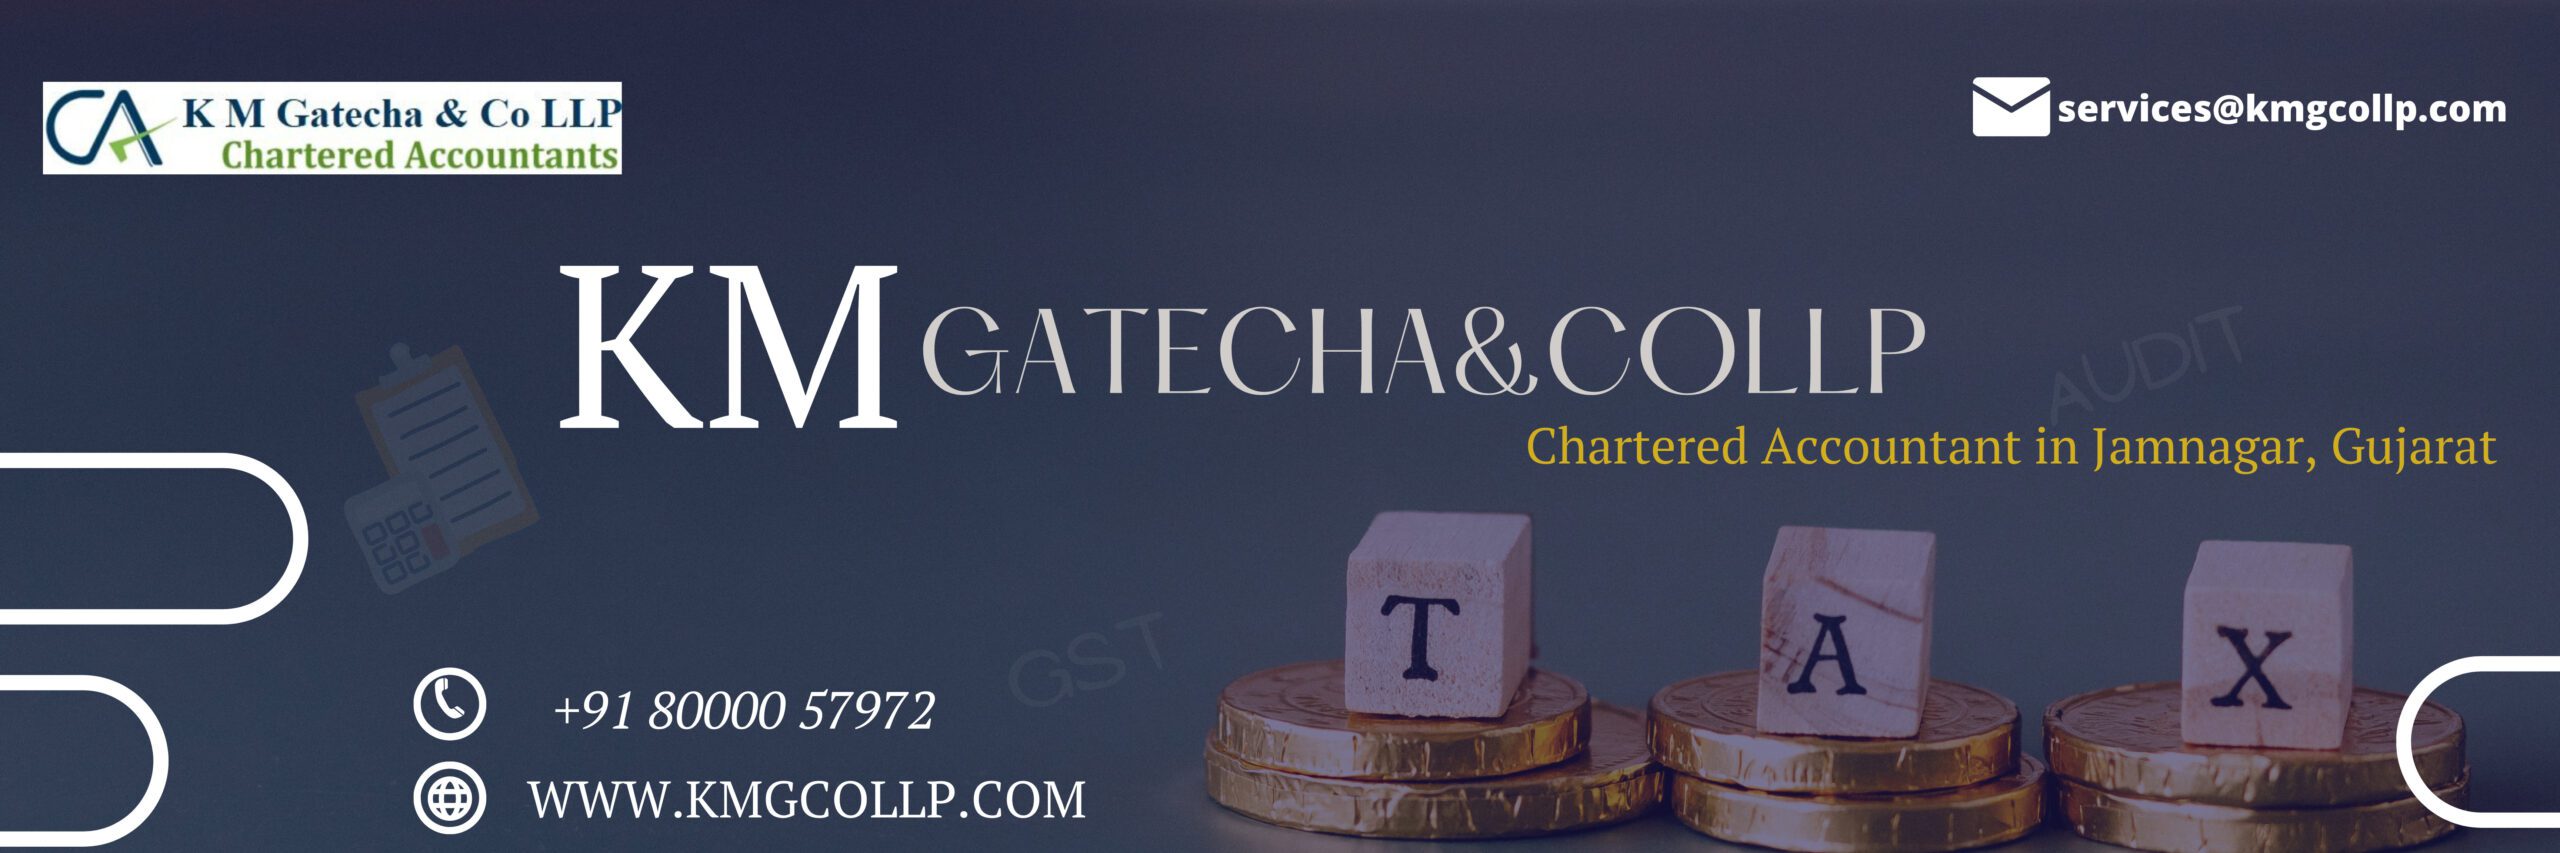 CA Chartered Accountant in Jamnagar in Jamnagar, Gujarat